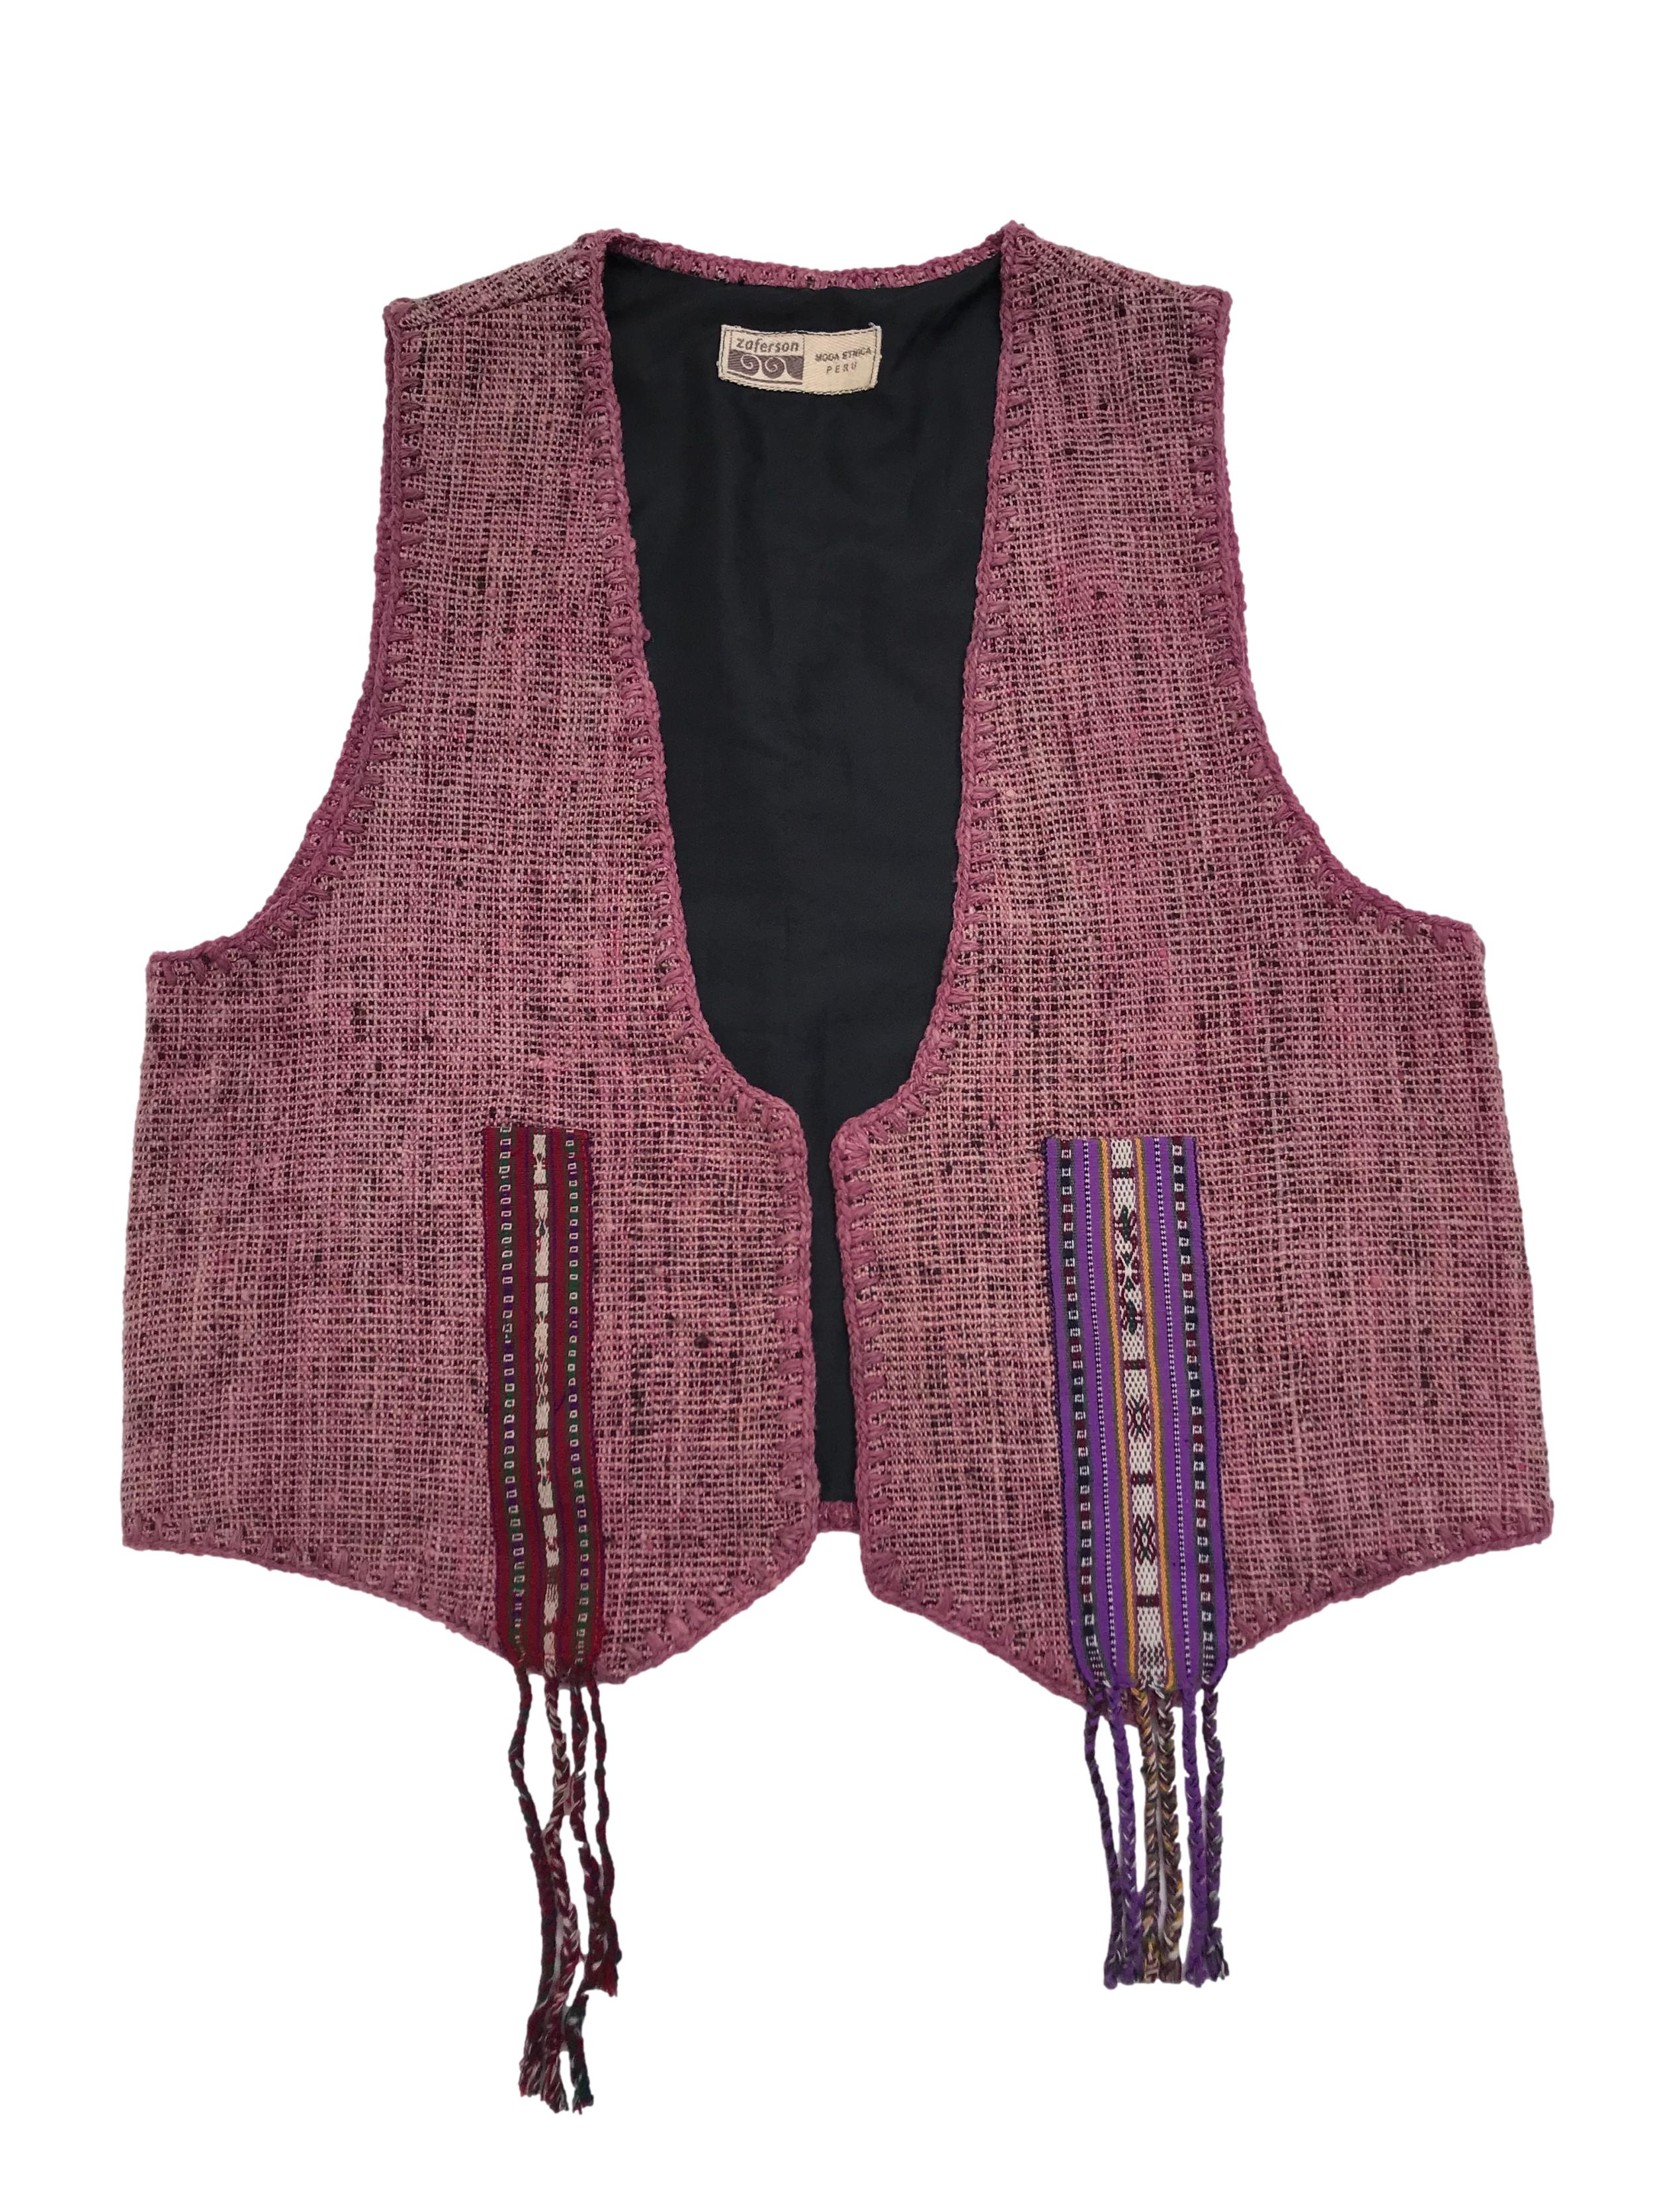 Chaleco moda étnica peruana, forrado. Ancho 104cm Largo 55cm (+10 por flecos)